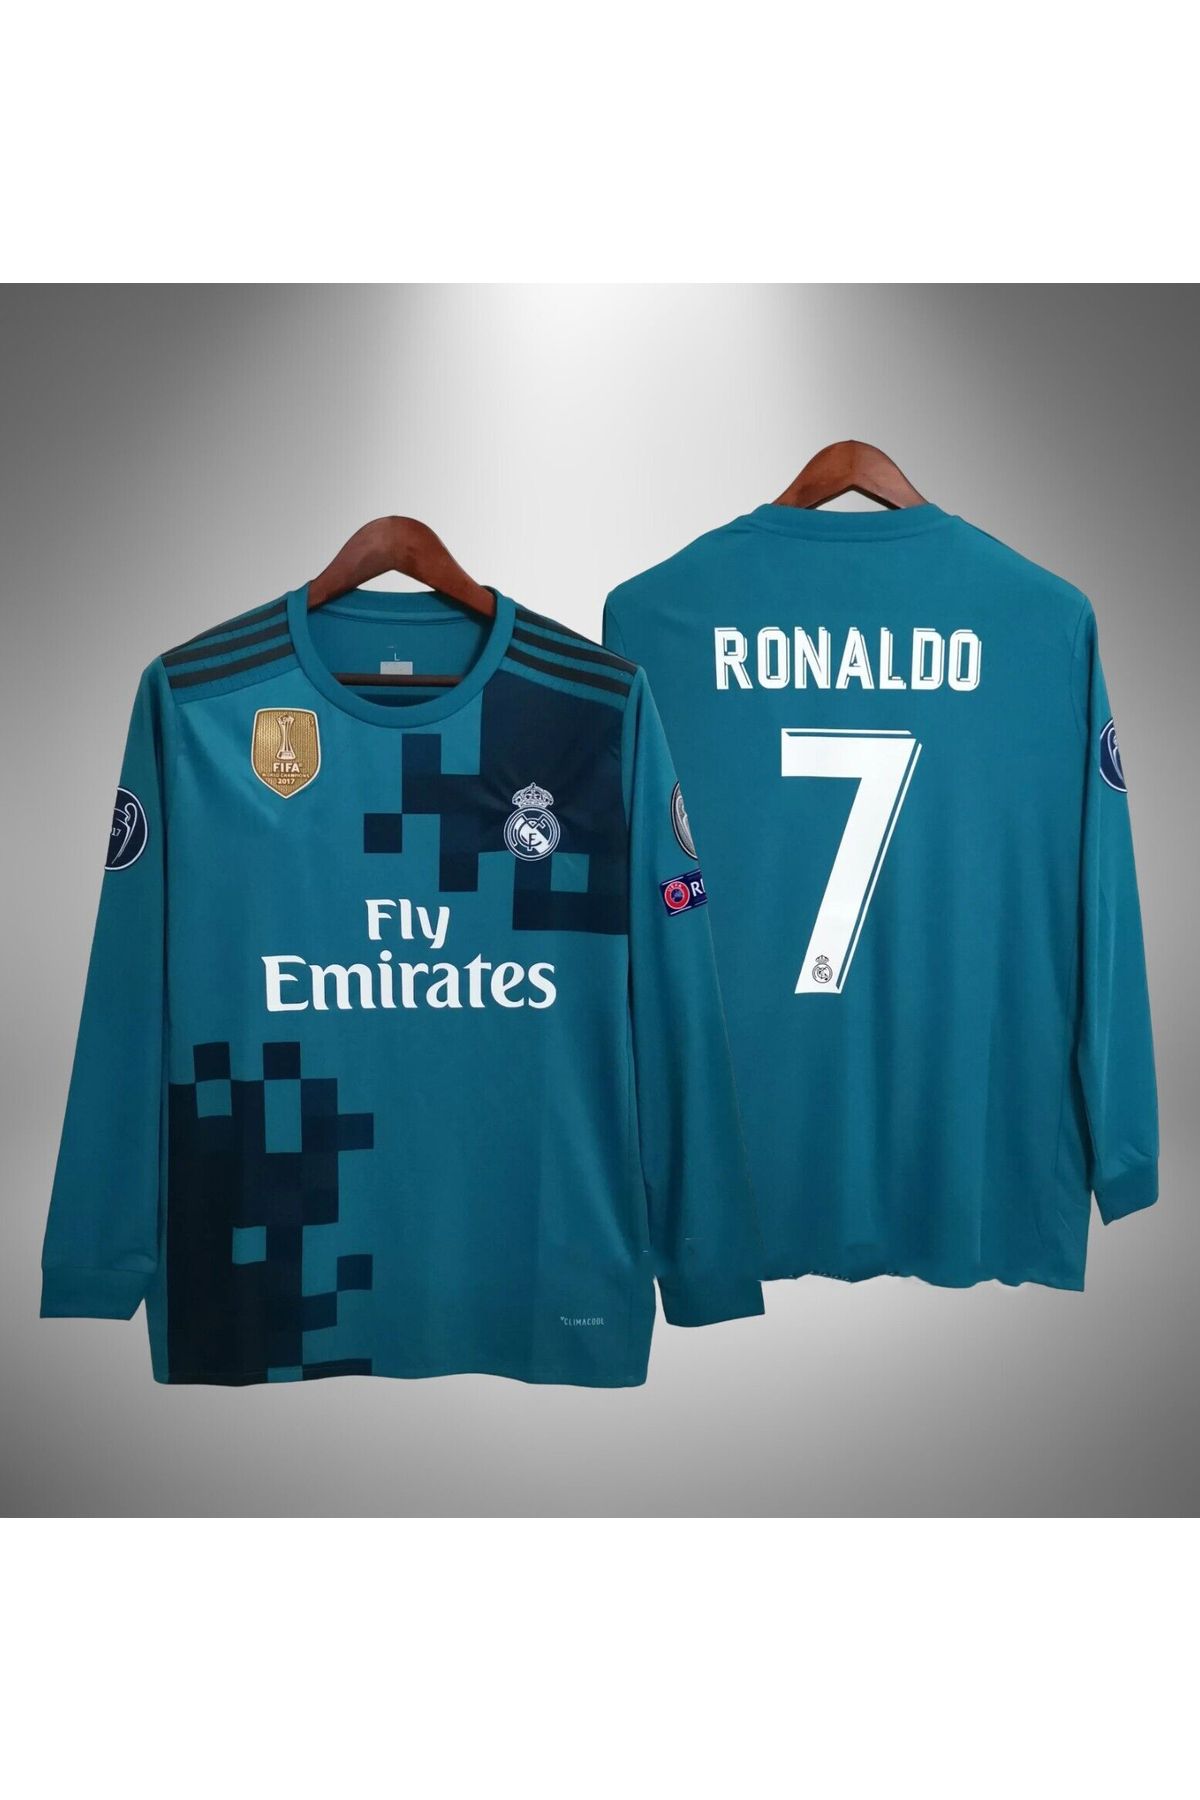 ZİLONG Realmadrid Uzun Kollu Ronaldo 2017-2018 Futbol Yetişkin Forması